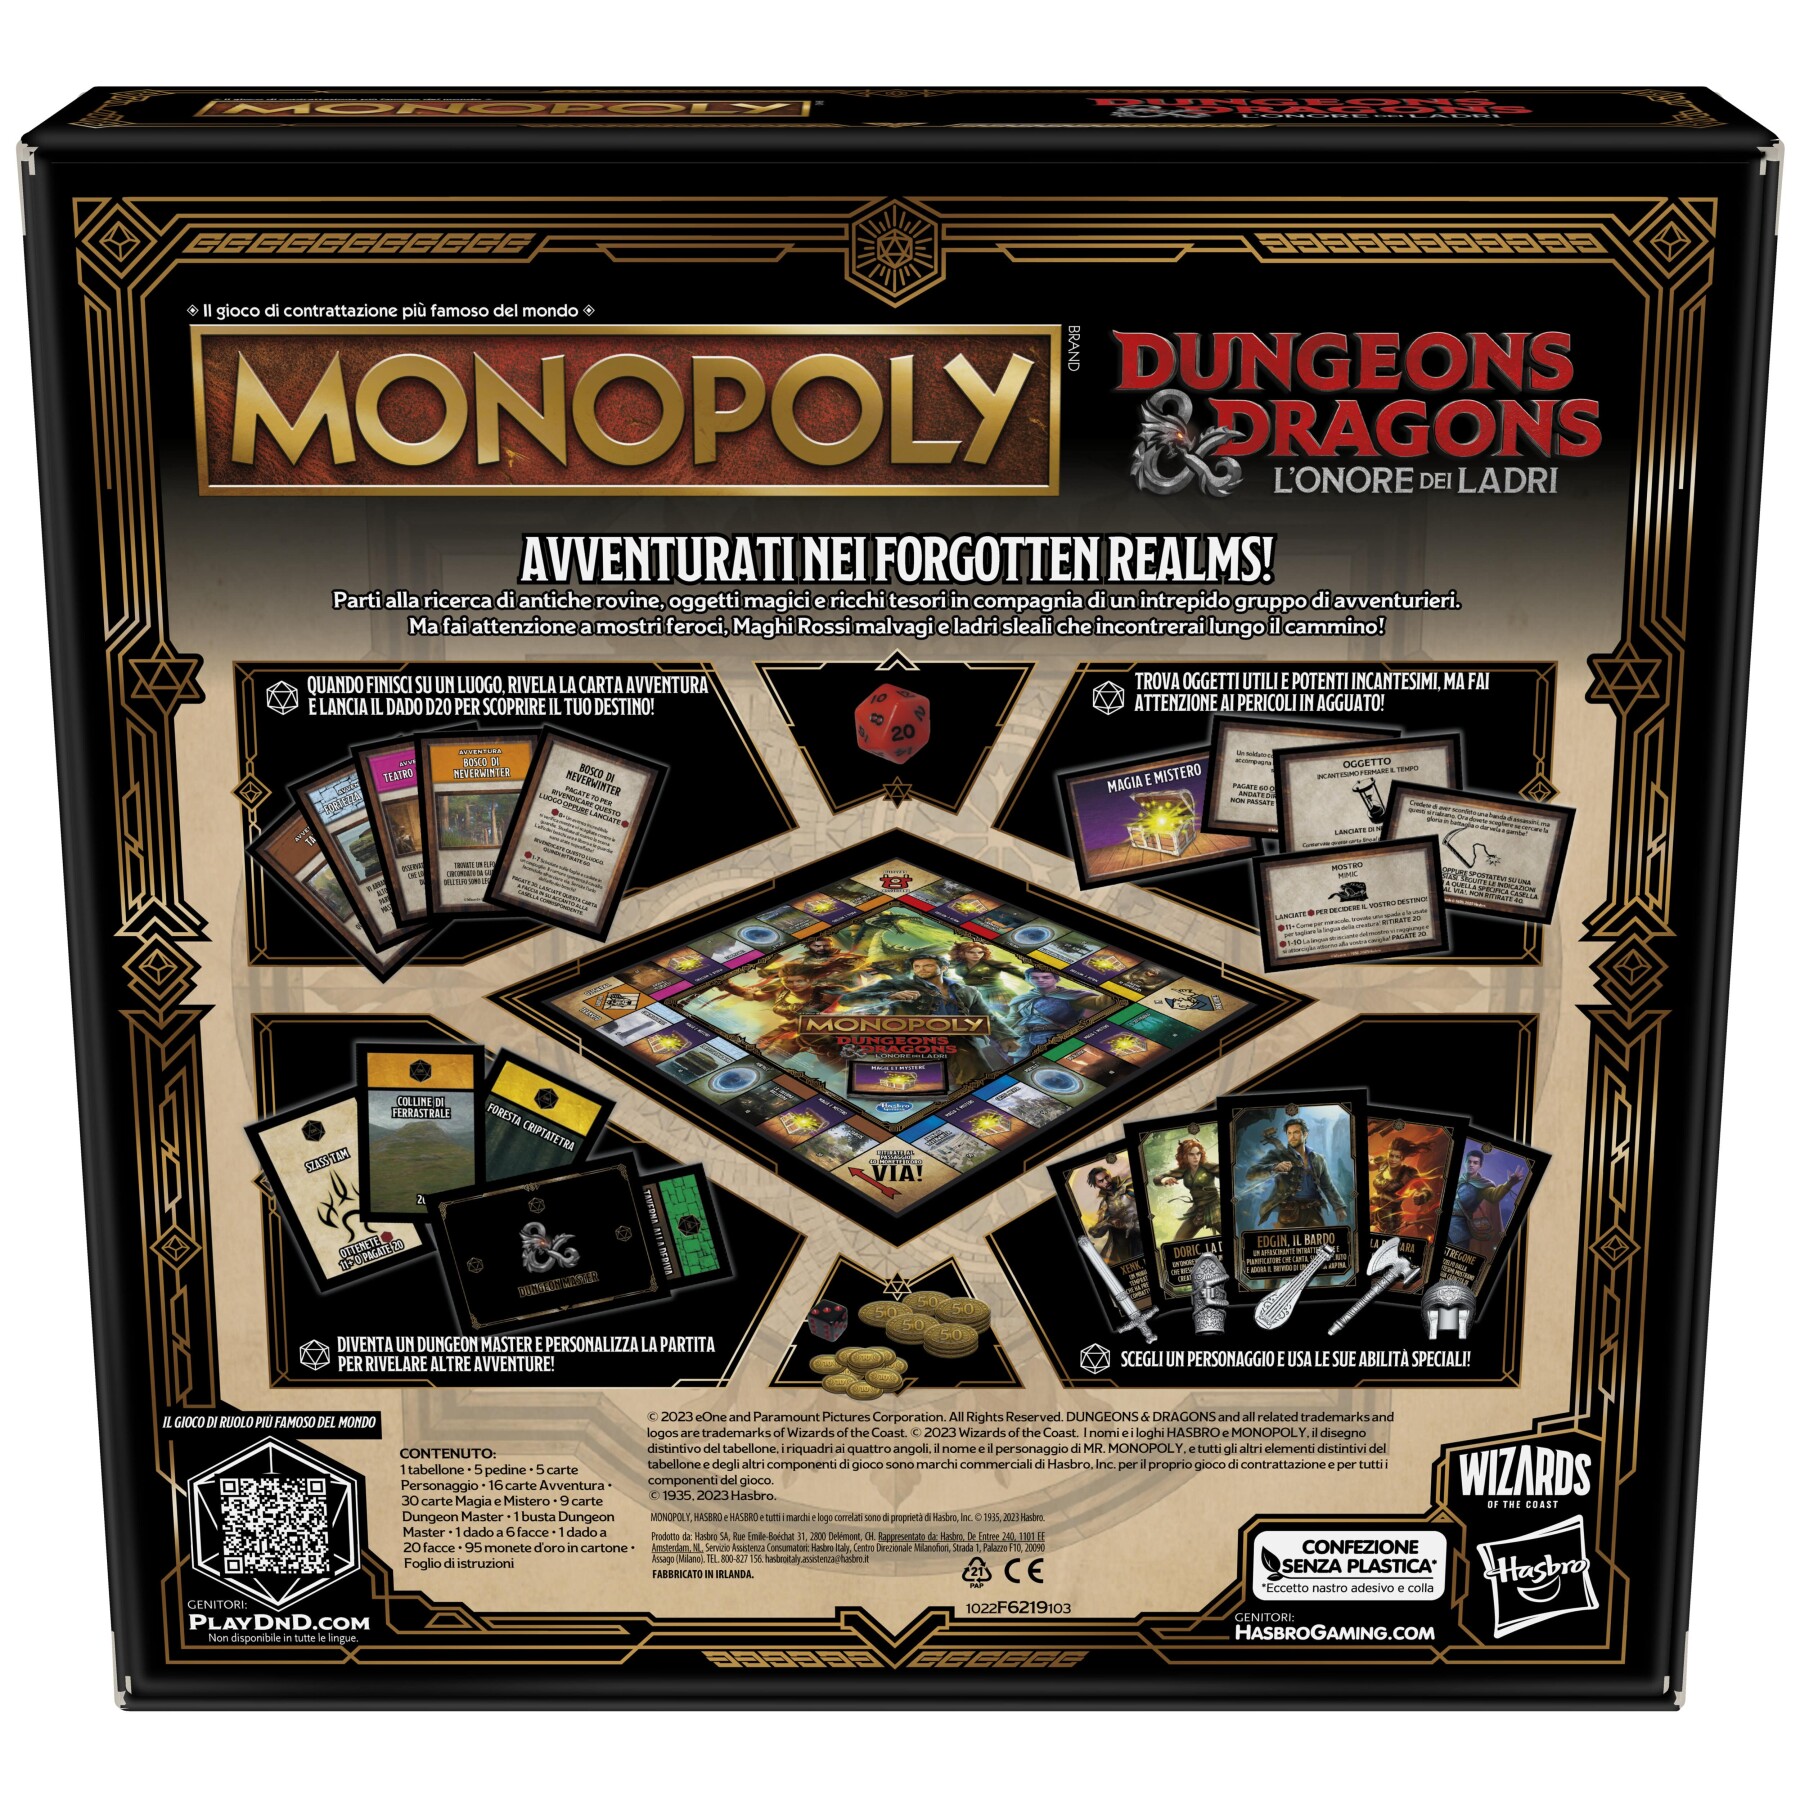 Monopoly dungeons & dragons: l'onore dei ladri, ispirato al film d&d l'onore dei ladri e con modalità di gioco mai viste prima in monopoly! - MONOPOLY